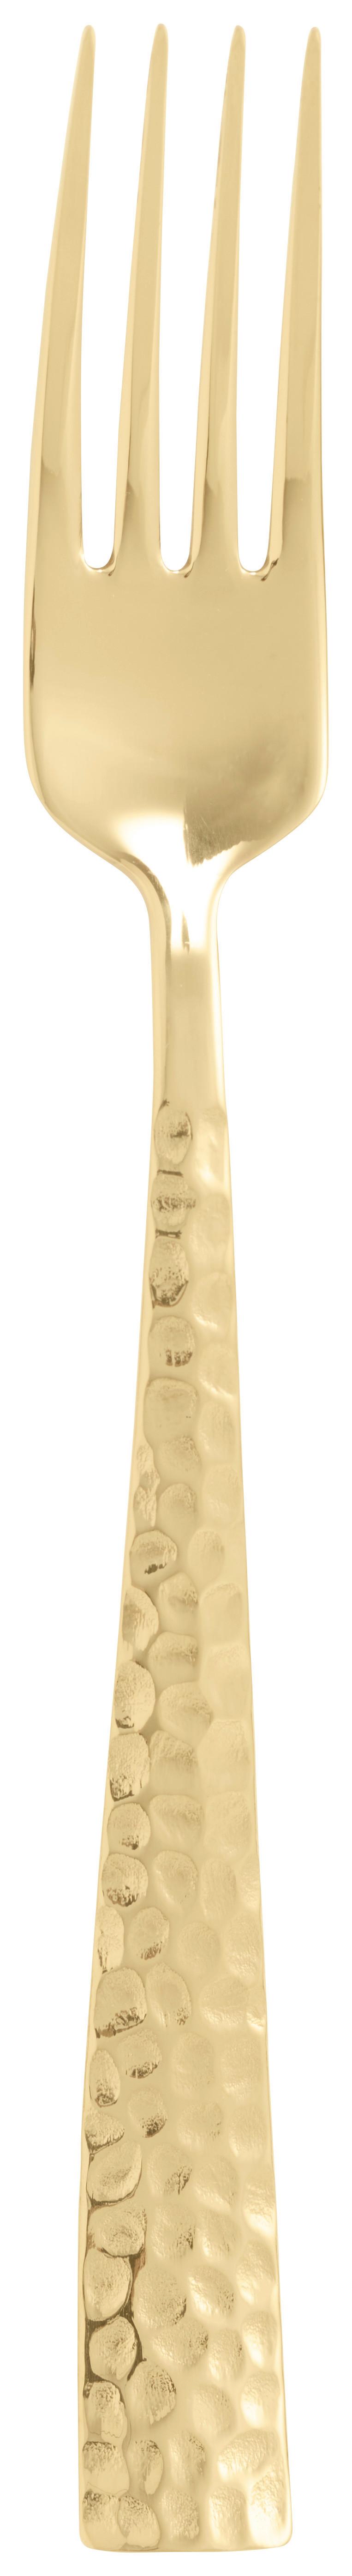 Gabel in Gold - Goldfarben, Modern, Metall (21cm)